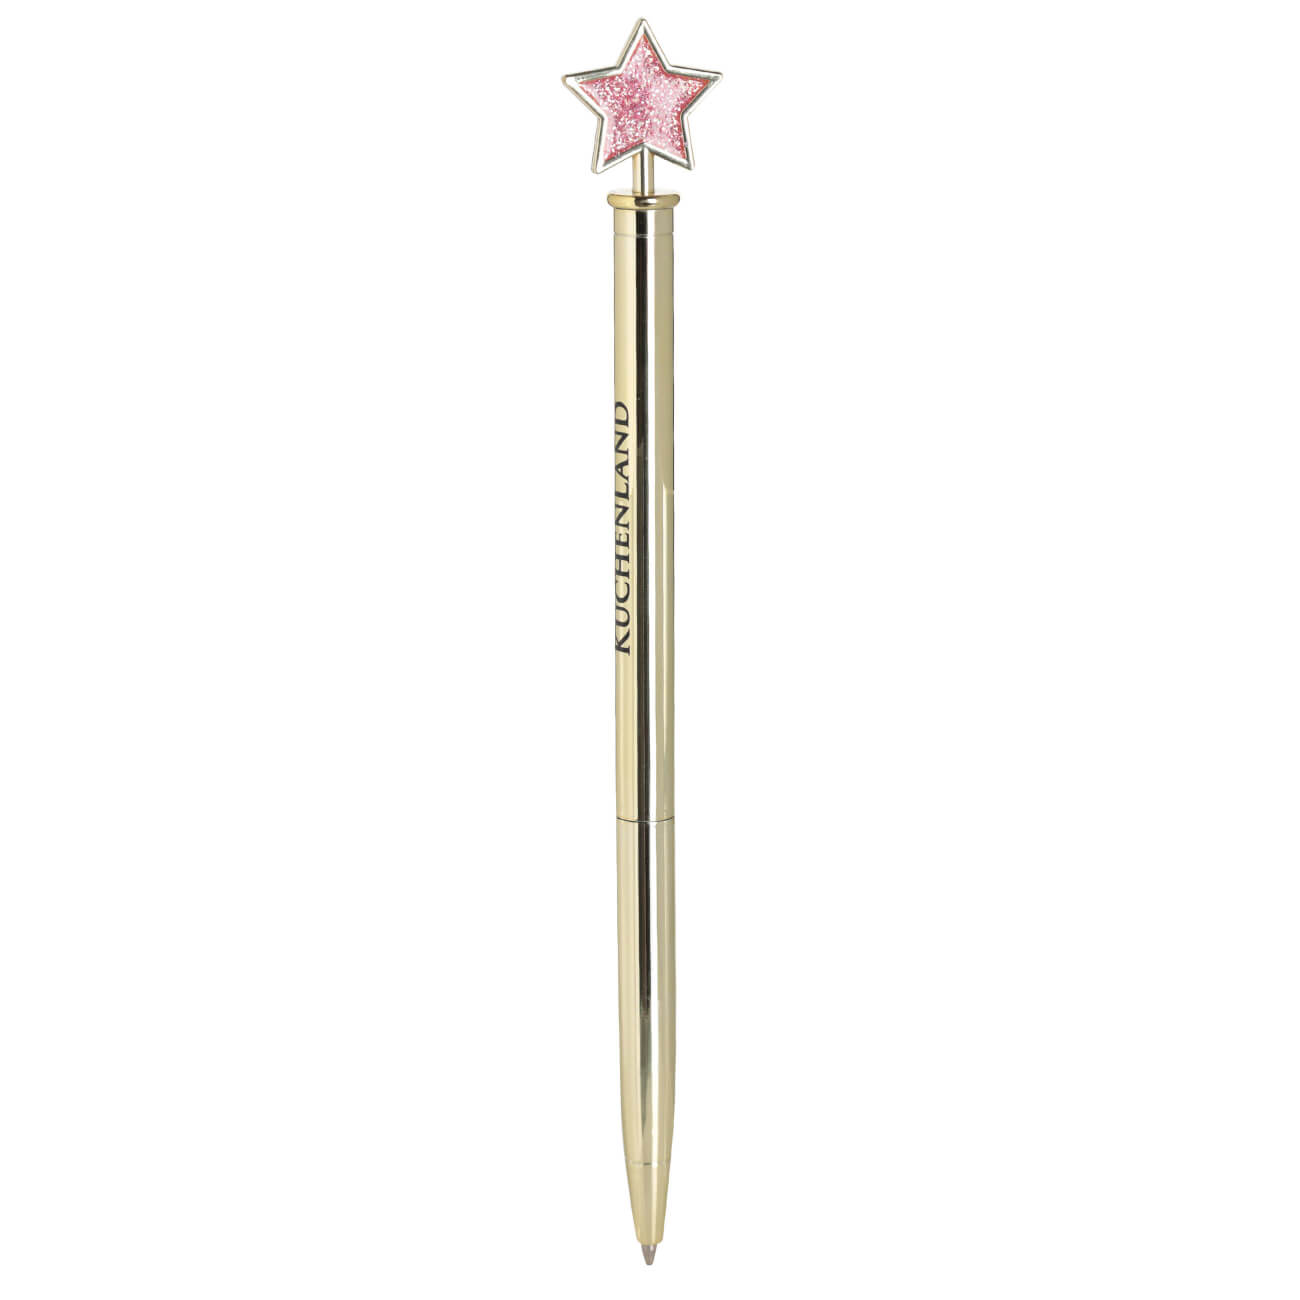 Ручка шариковая, 15 см, с фигуркой, металл, золотистая, Звезда, Draw figure ручка шариковая 14 см с фигуркой серебристая заяц draw figure